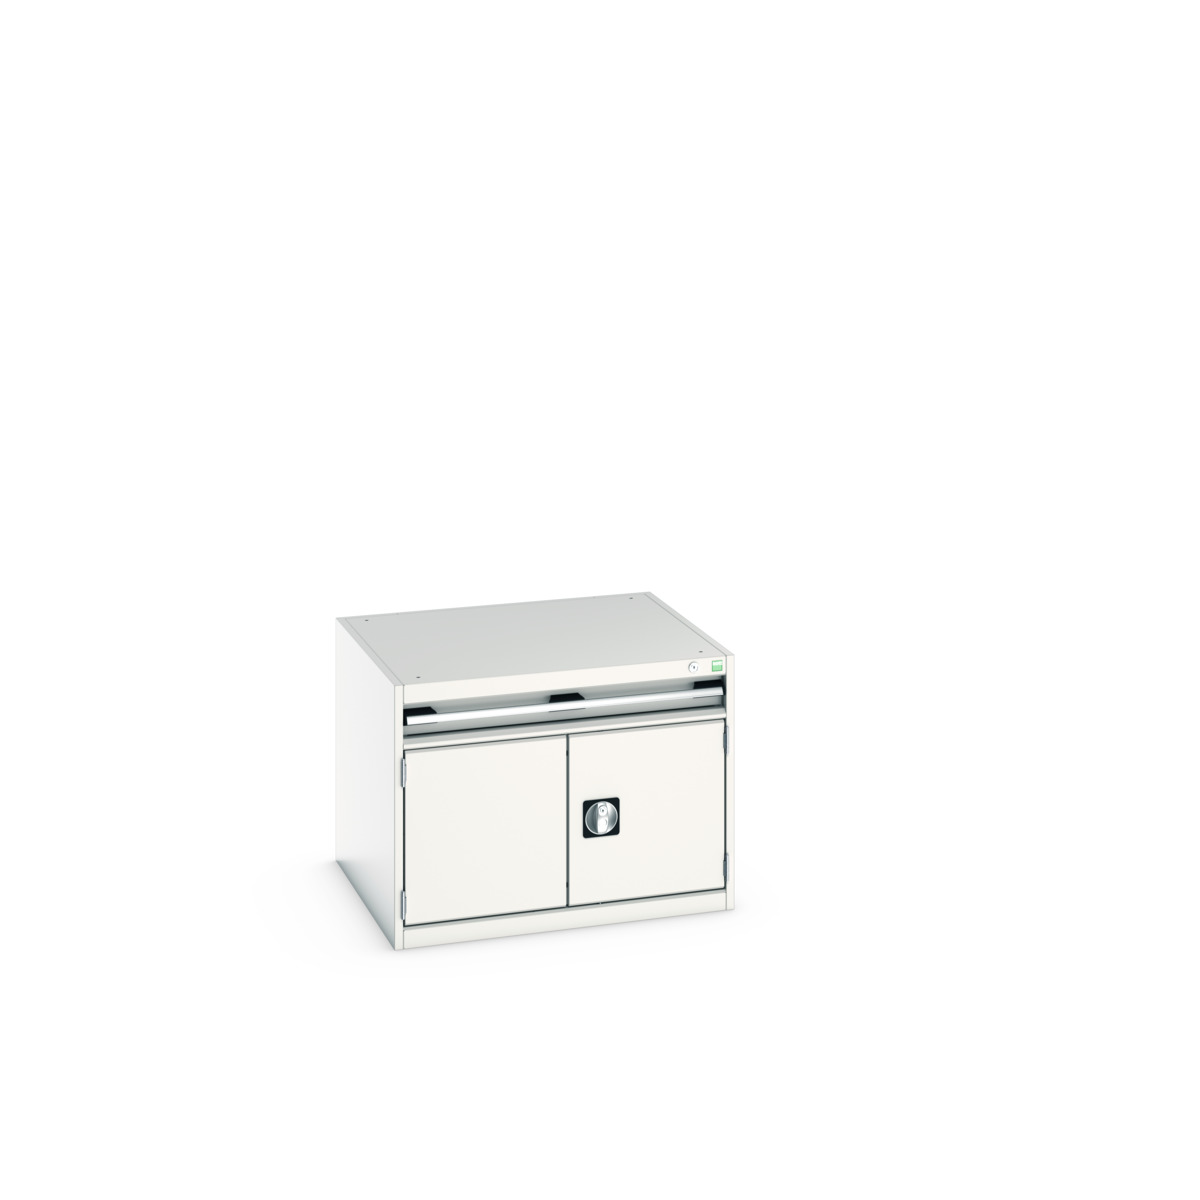 40028089.16V - cubio drawer-door cabinet